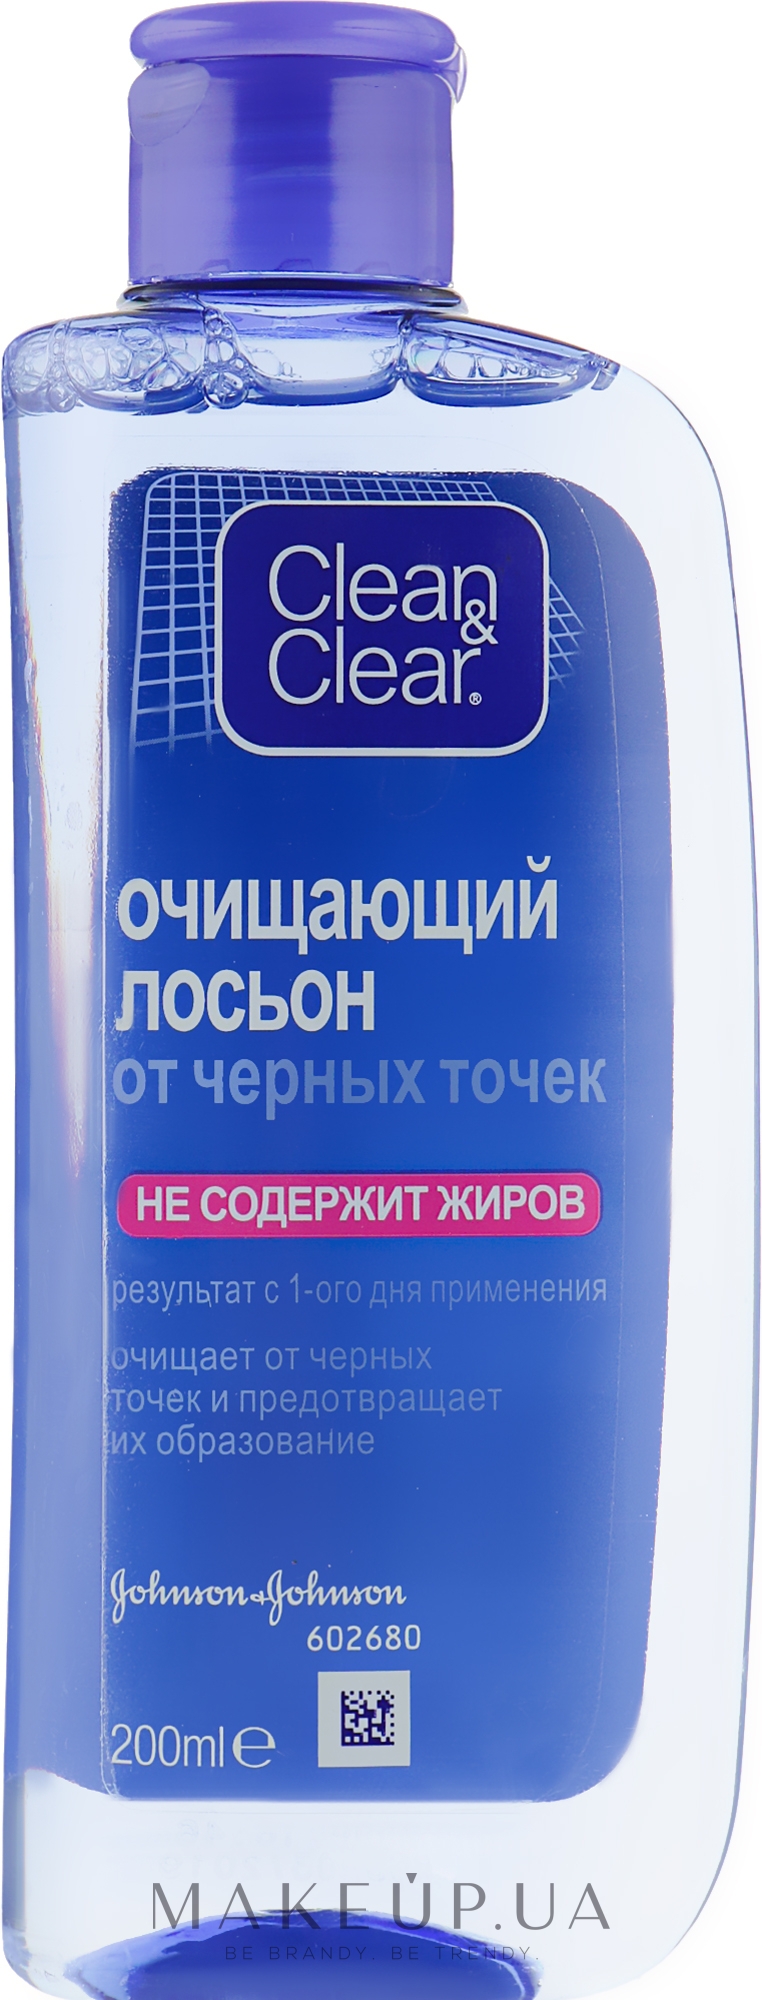 Clean & Clear Blackhead Clearing Daily Lotion - Лосьон для очистки кожи от  черных точек: купить по лучшей цене в Украине | Makeup.ua